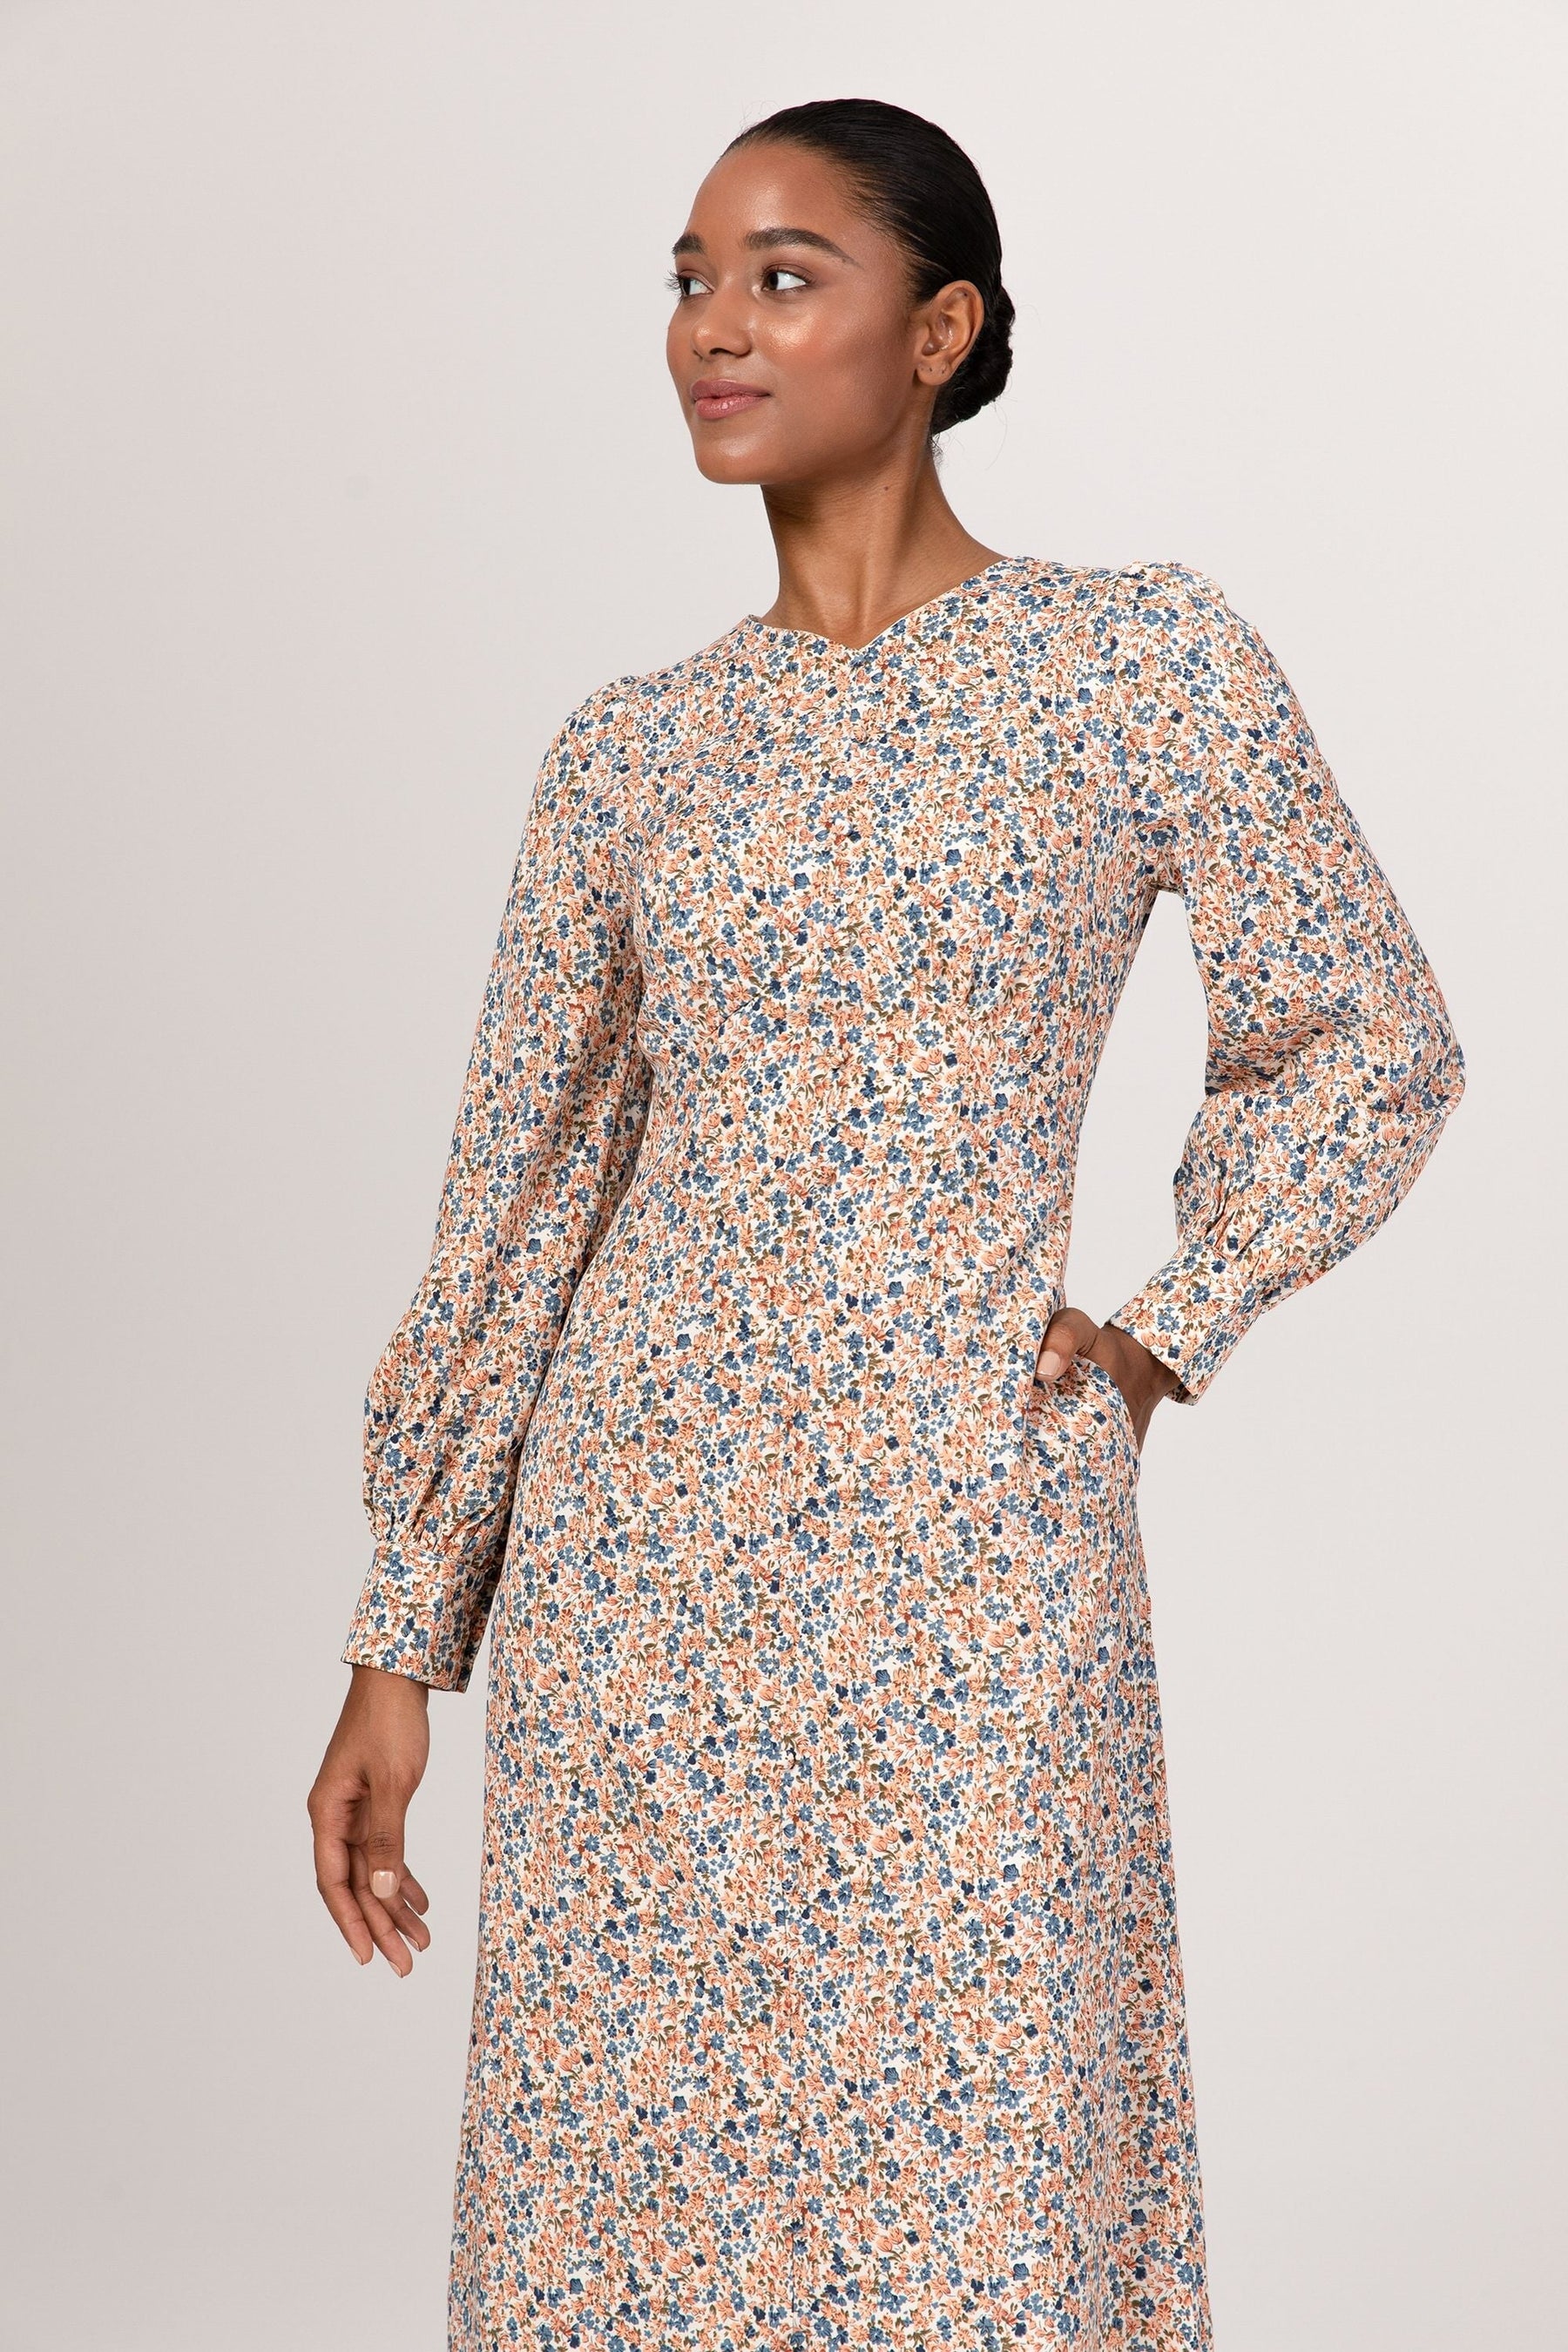 Signal revidere Besættelse Anaya Button Front Maxi Dress - Beige Floral